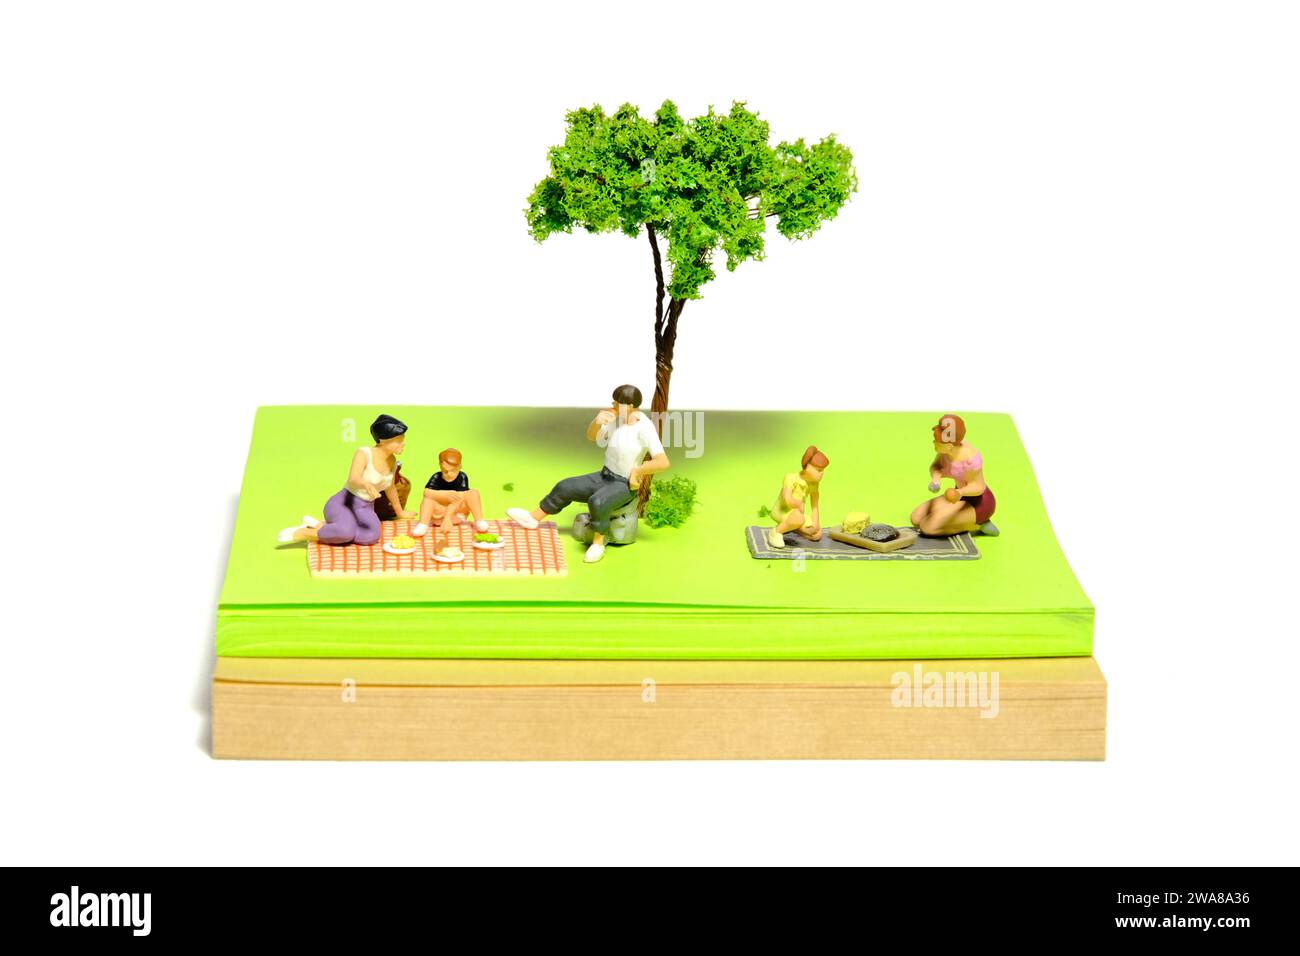 Photographie de figurine miniature créative de personnes. Installation de notes autocollantes. Pique-nique en famille au jardin public, parc en vacances d'été. Banque D'Images